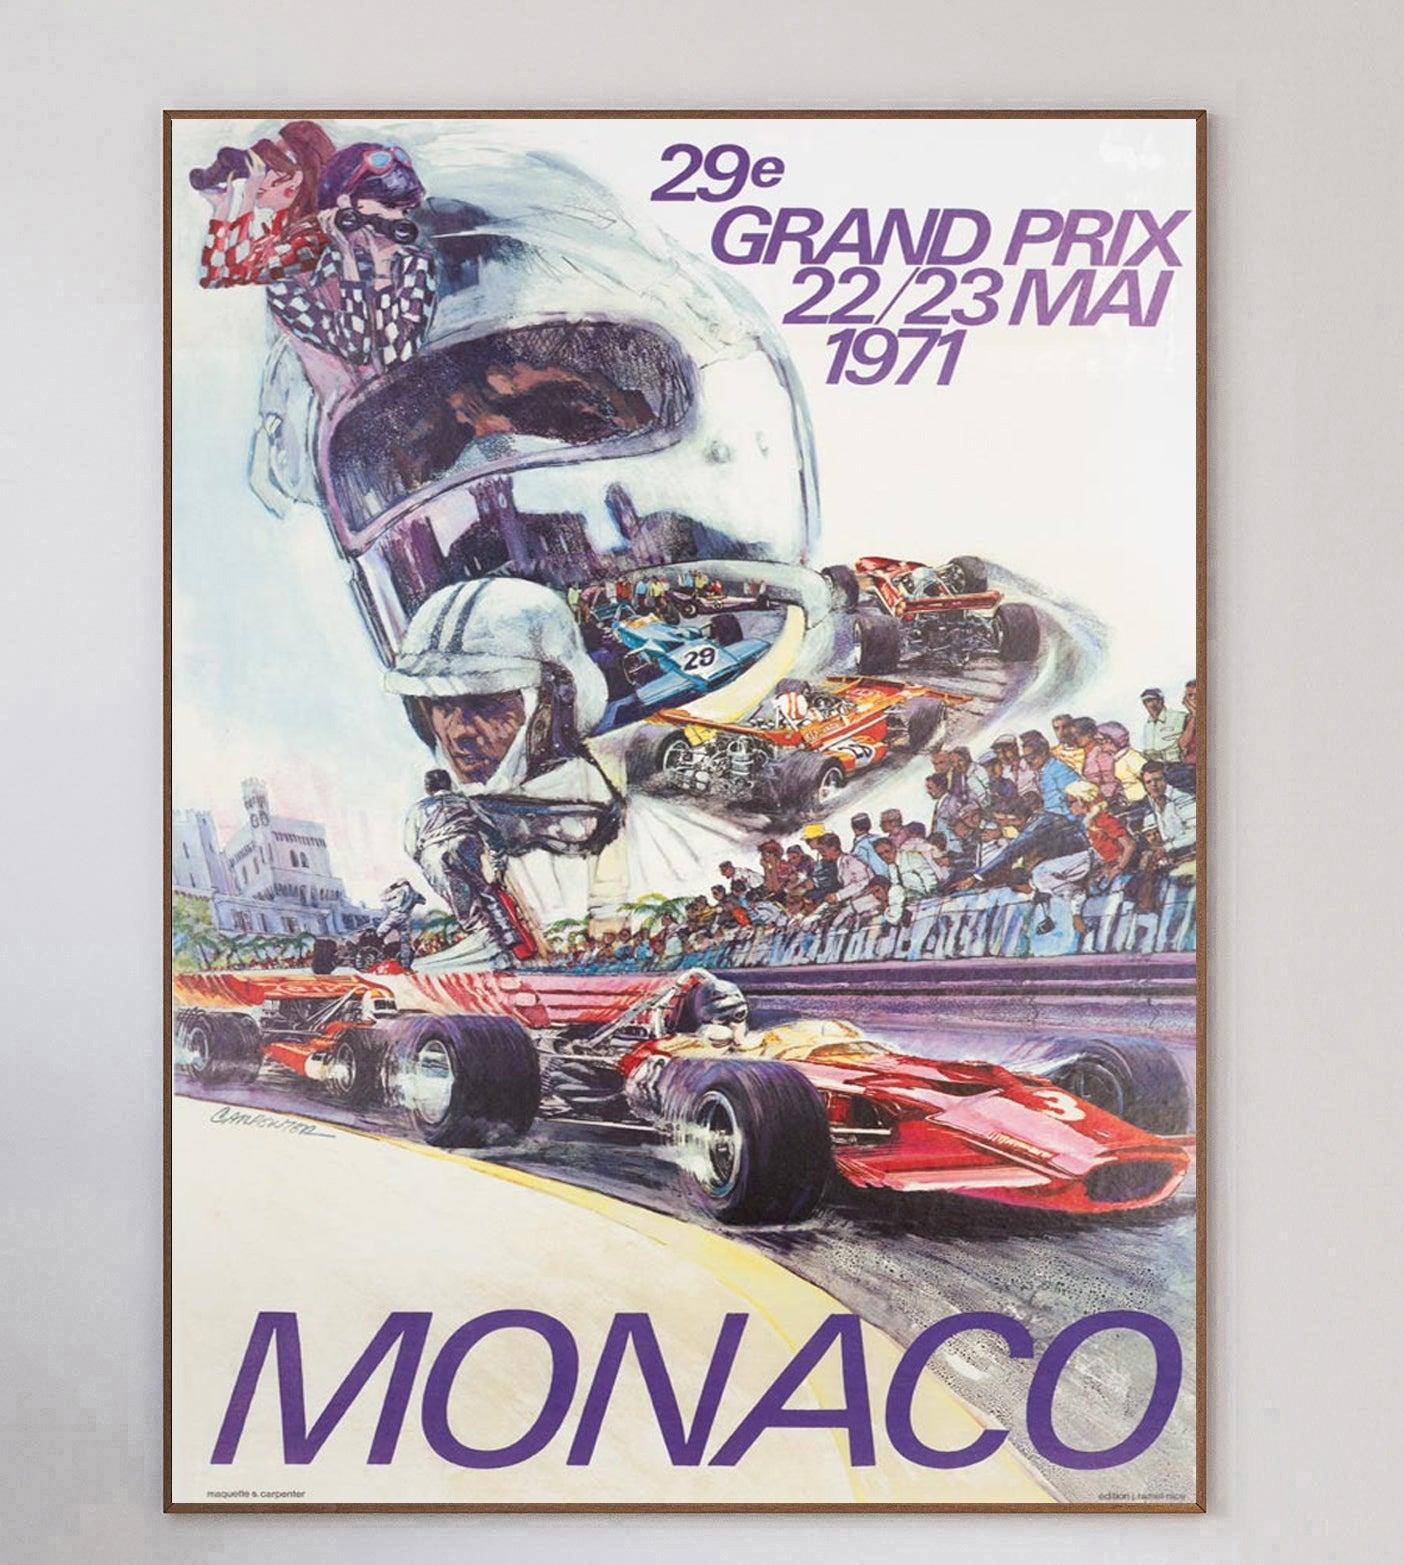 Cette affiche est celle du Grand Prix de Monaco 1971. La brillante illustration de Carpenter représente le vainqueur de l'année précédente, Jochen Rindt, au volant d'une Lotus-Ford.

La magnifique affiche montre les voitures qui font la course le